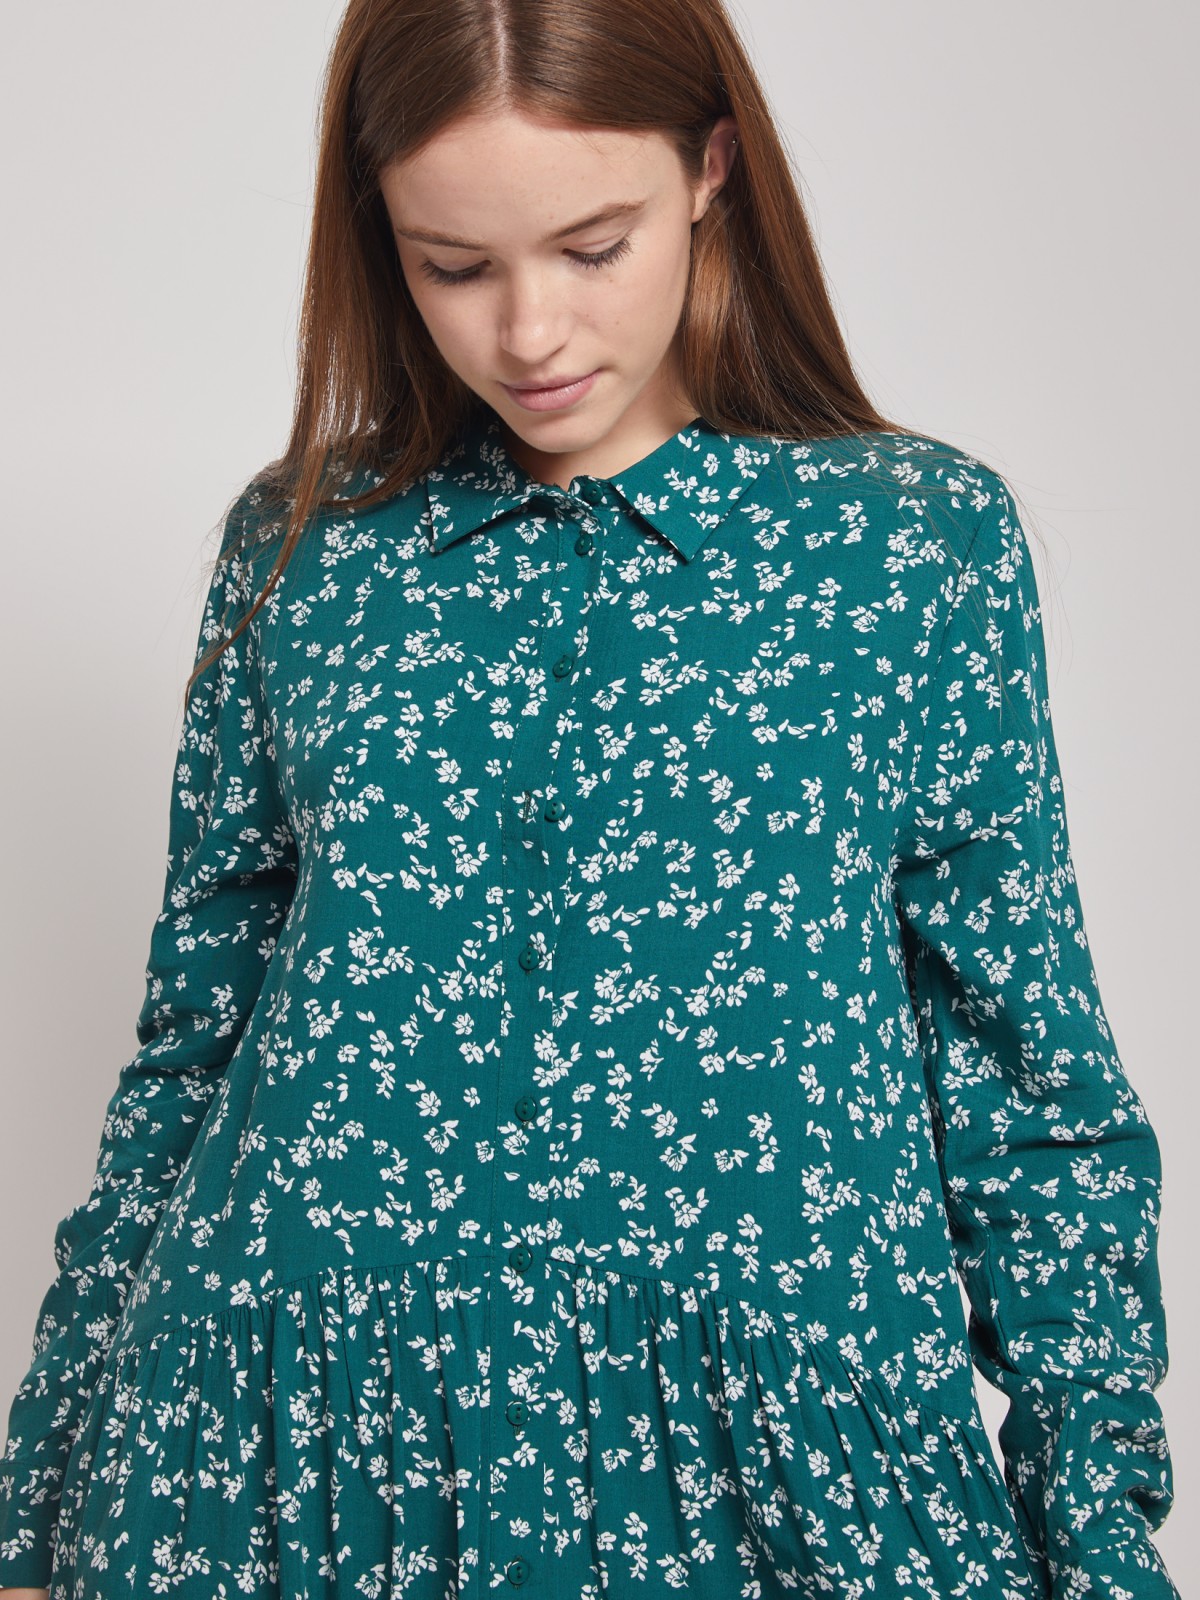 Платье-рубашка с длинным рукавом zolla 022118259052, цвет зеленый, размер S - фото 4